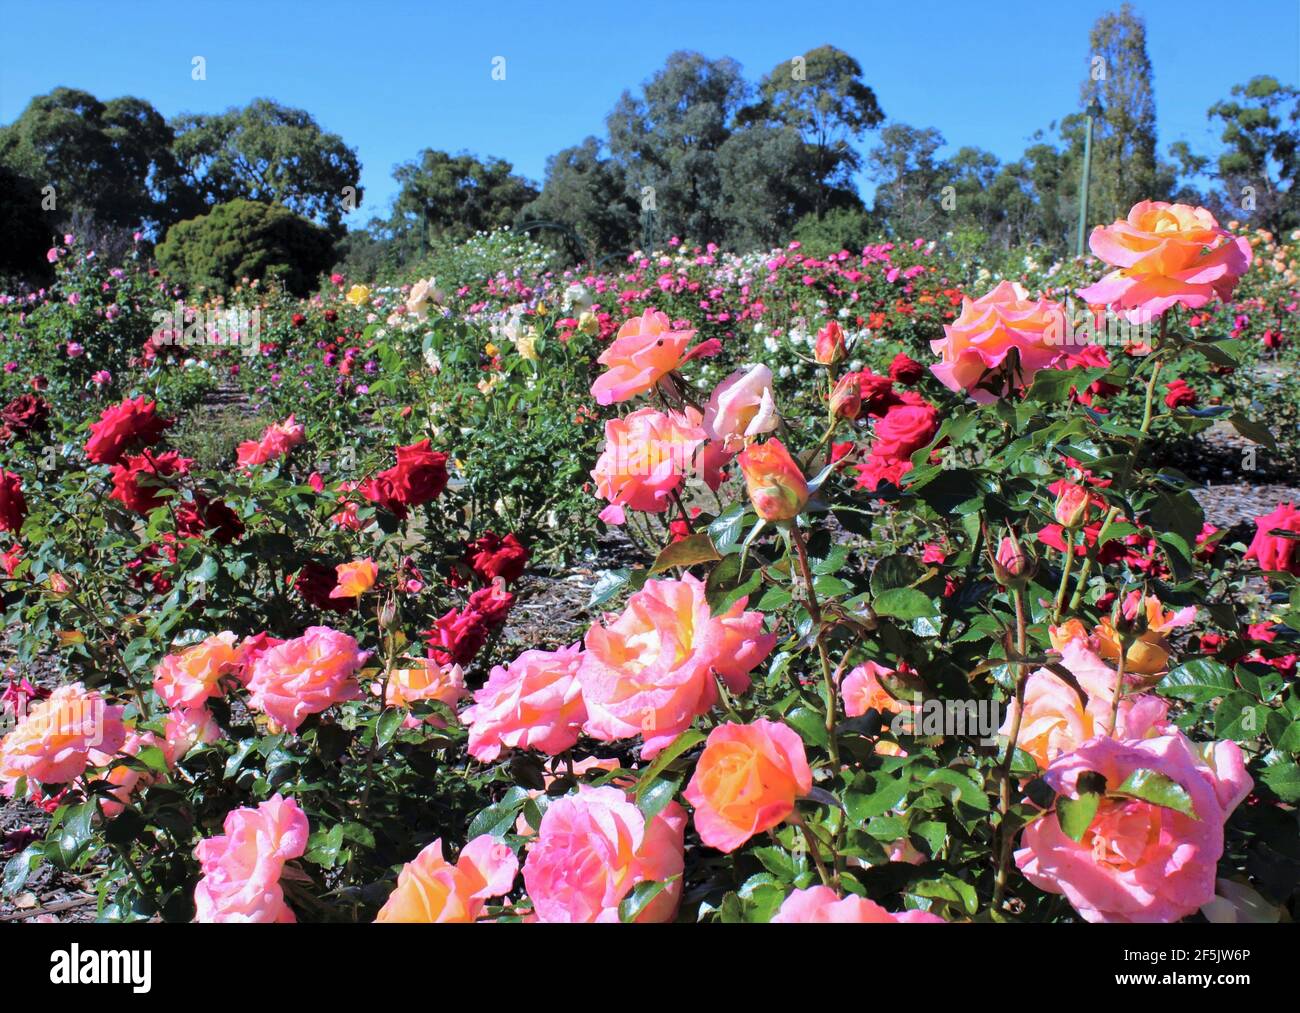 Heimelige öffentliche Gärten in Australien, Ben Swanes Rose Walk, Victoria Park in Goulburn, New South Wales, Australien. Stockfoto